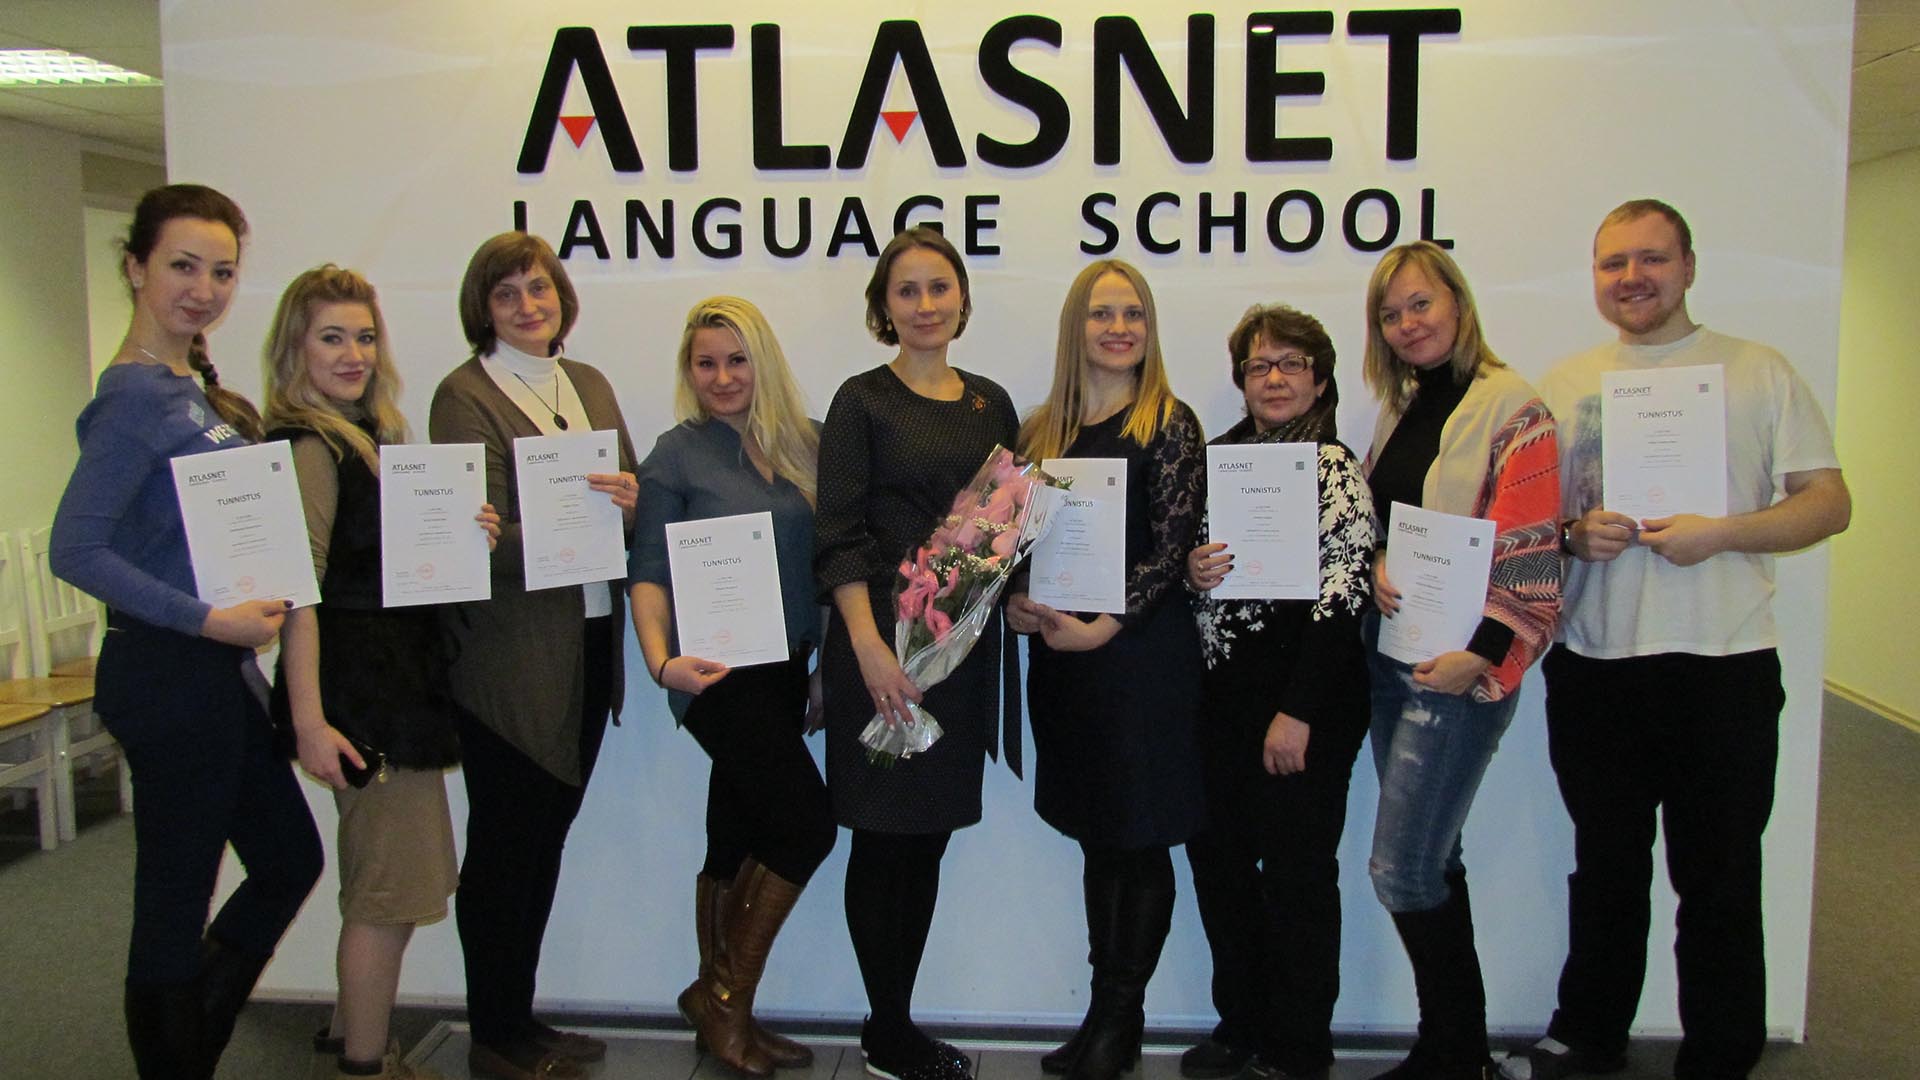 курсы эстонского языка в таллинне atlasnet